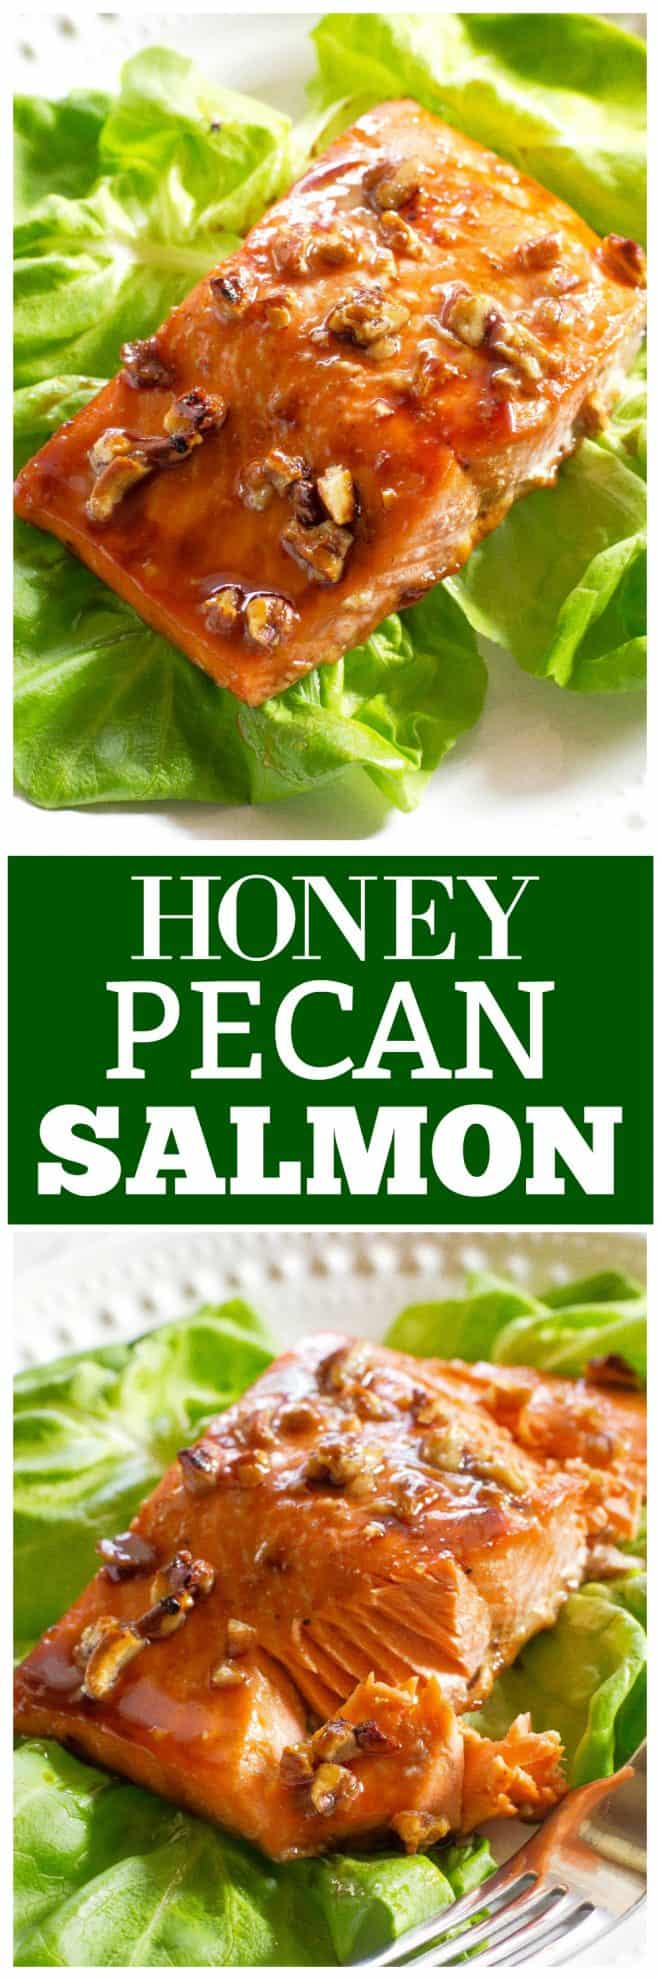 Honey Pecan Salmon